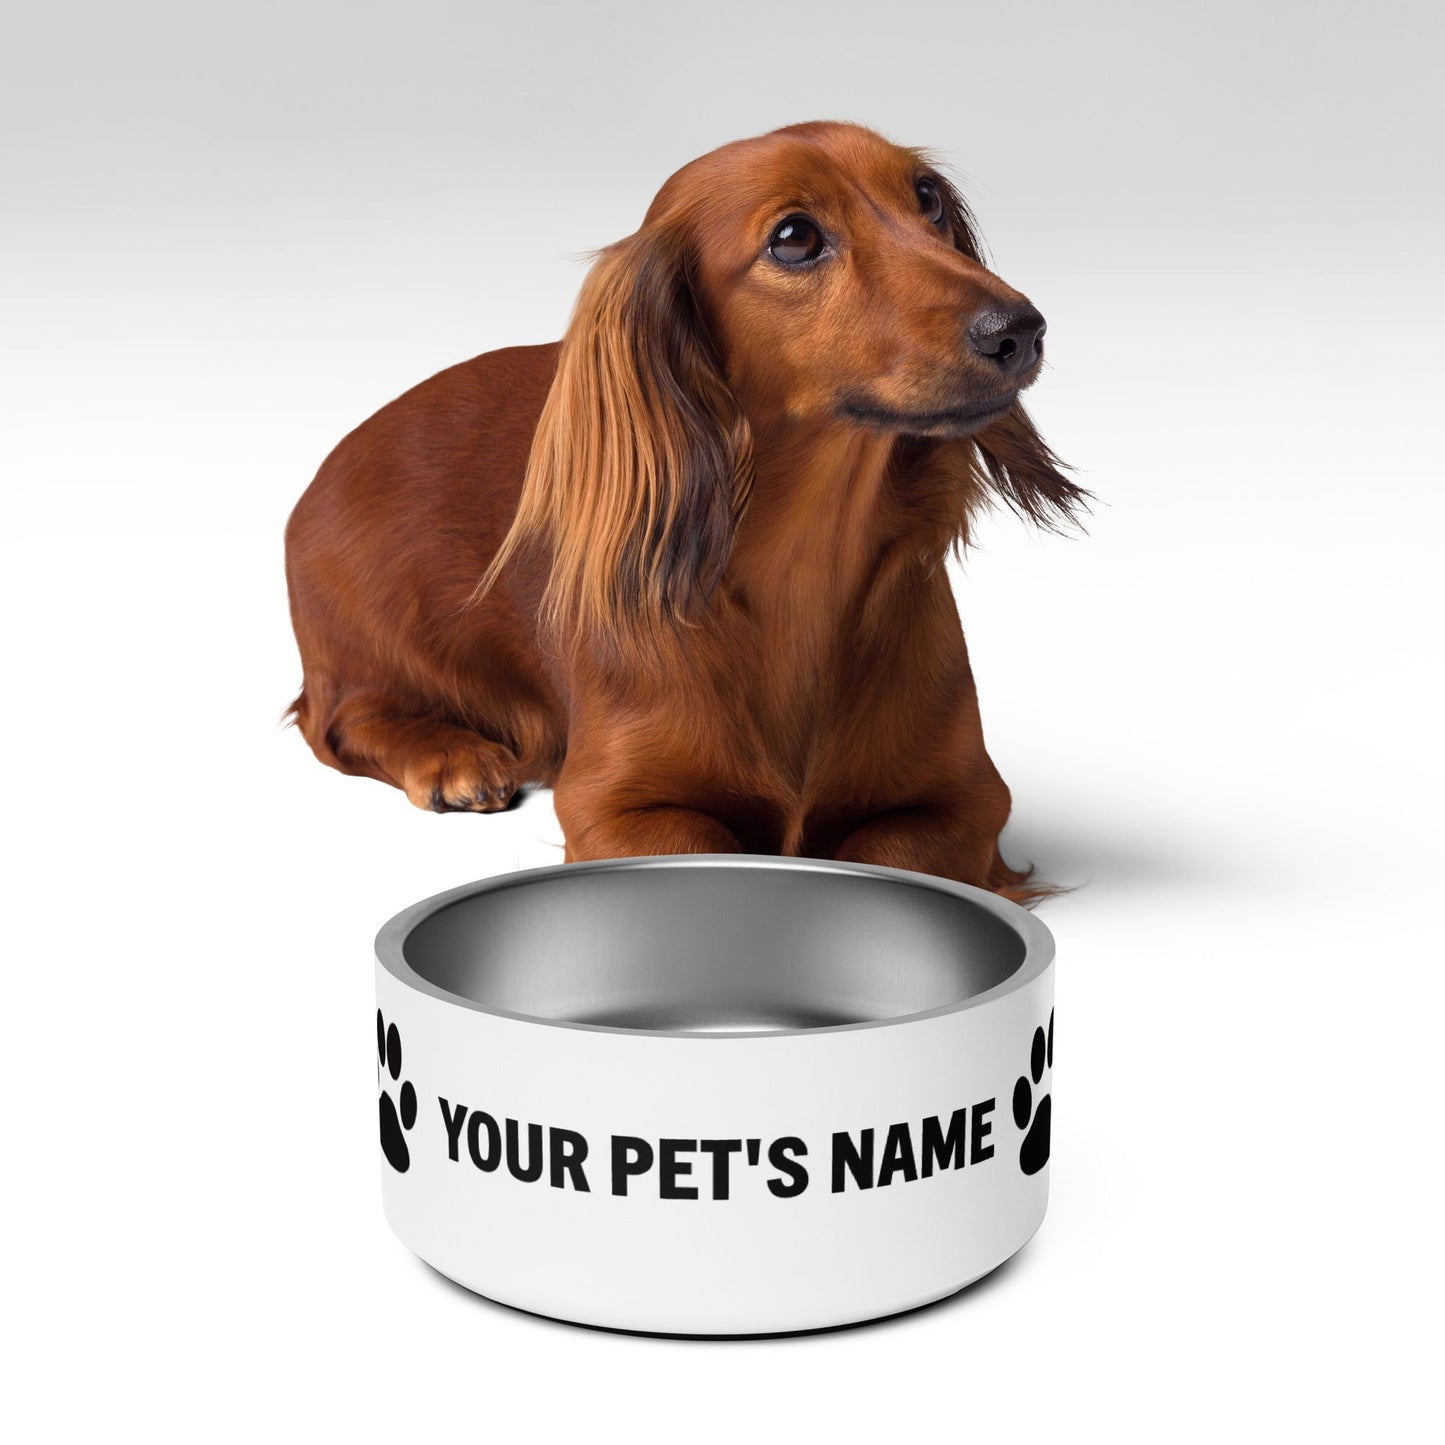 Pet bowl - Customize with Your Pet's Name